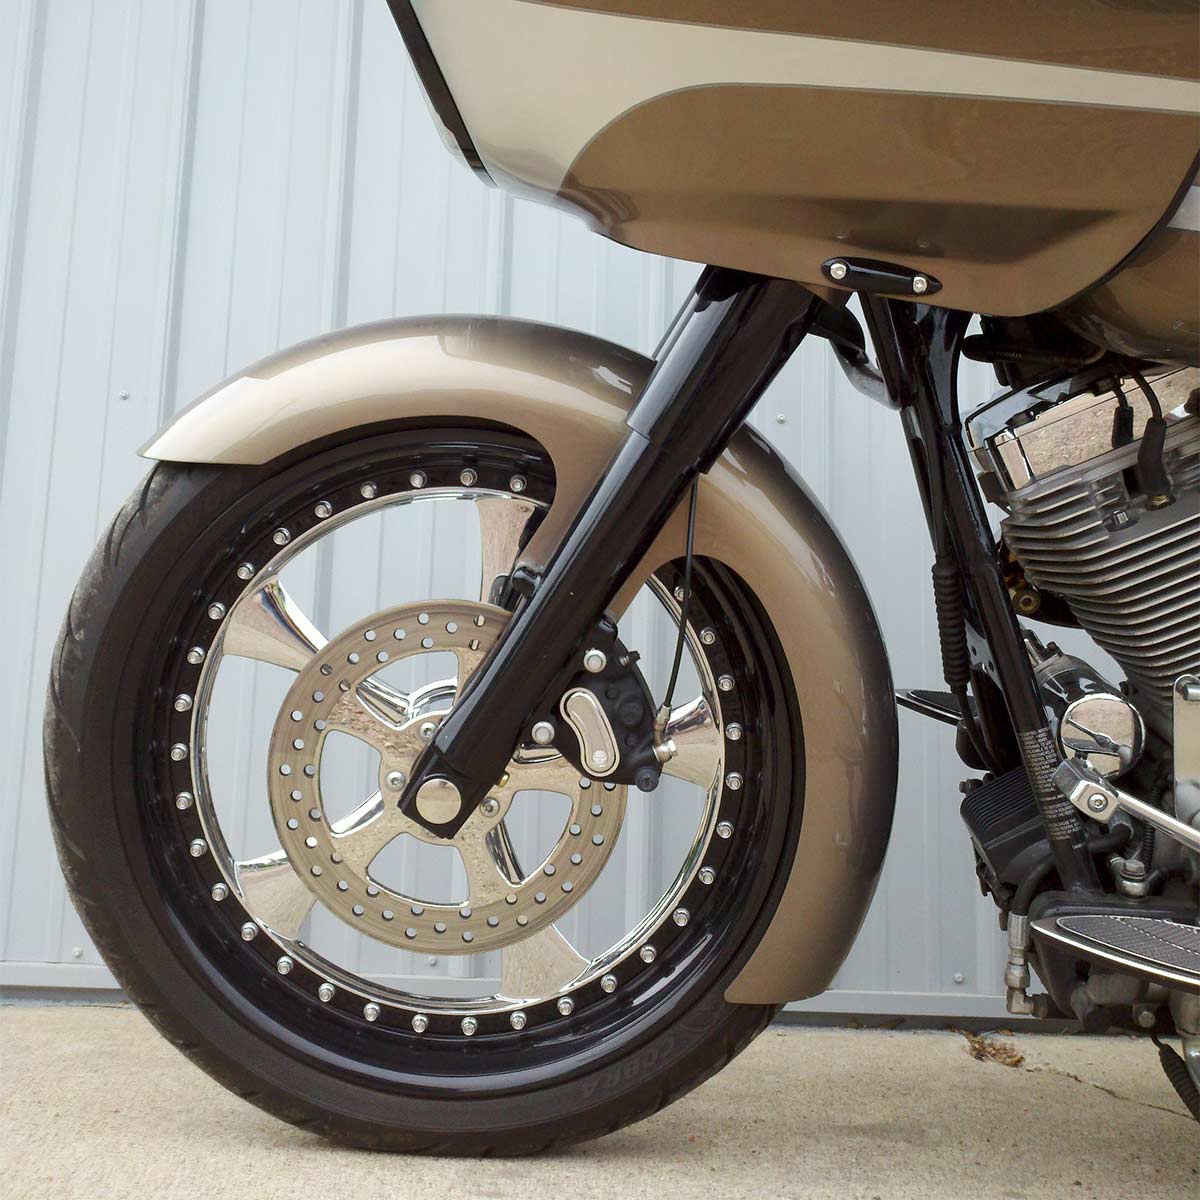 21" Slicer Tire Hugger Front Fenders for Harley-Davidson 1983-2013 Touring Motorcycle Models(21" Slicer)